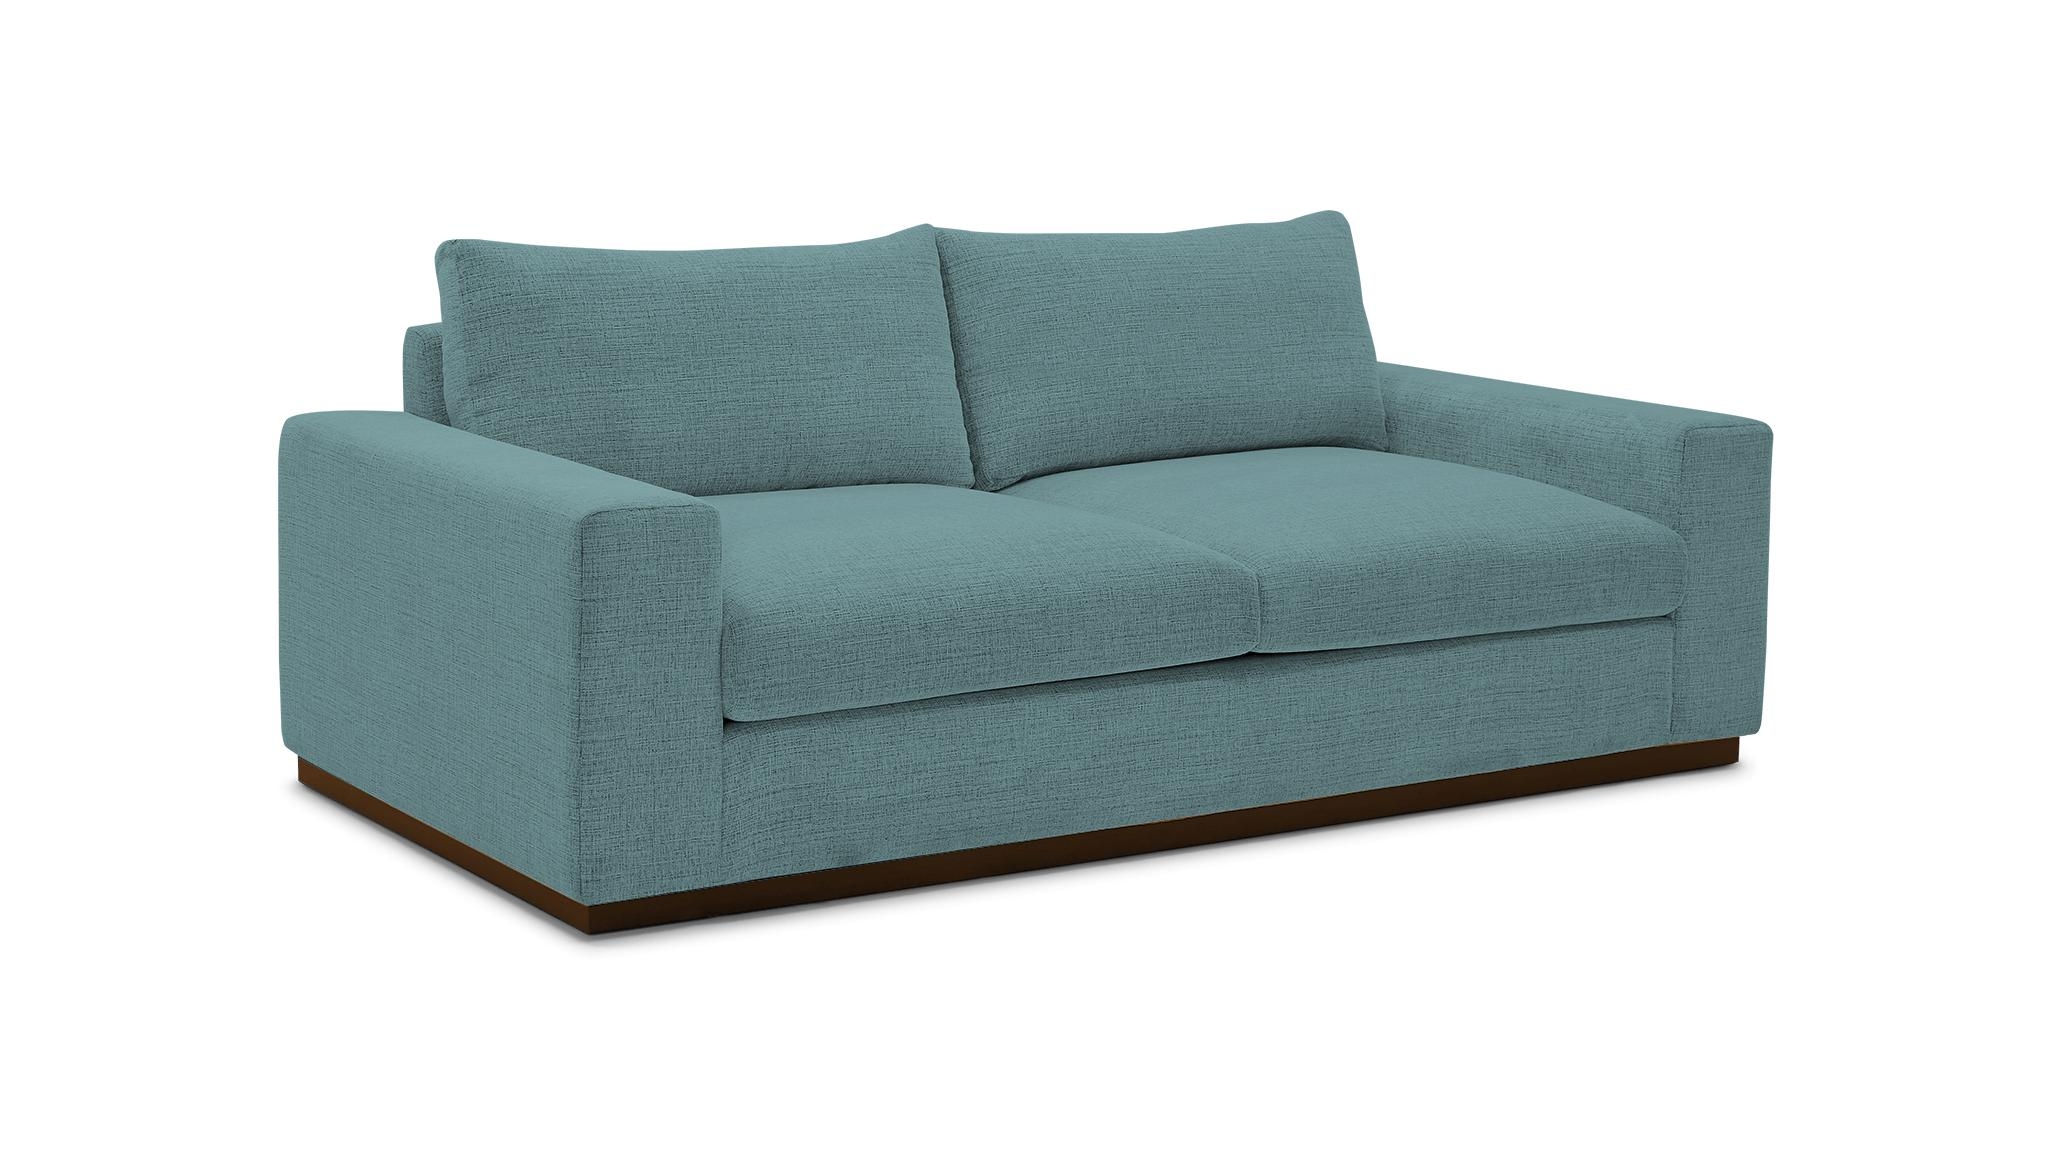 Blue Holt Mid Century Modern Sofa - Dawson Slate - Mocha - Image 1